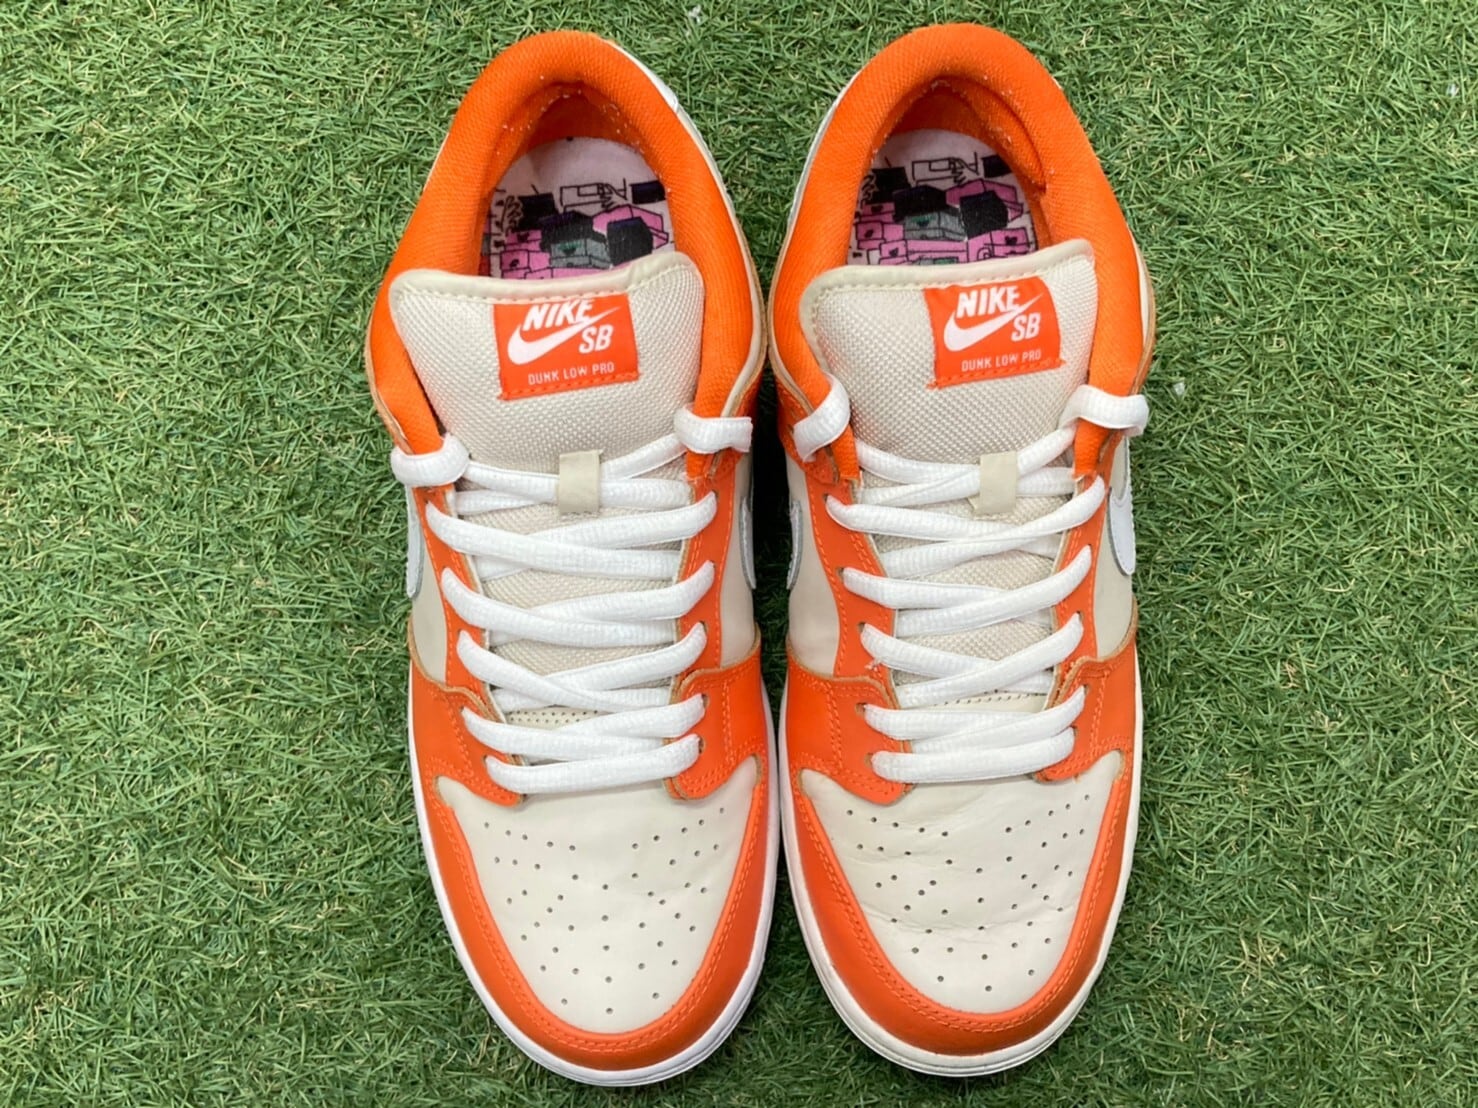 Nike SB Dunk Low “Orange Box” 313170-811